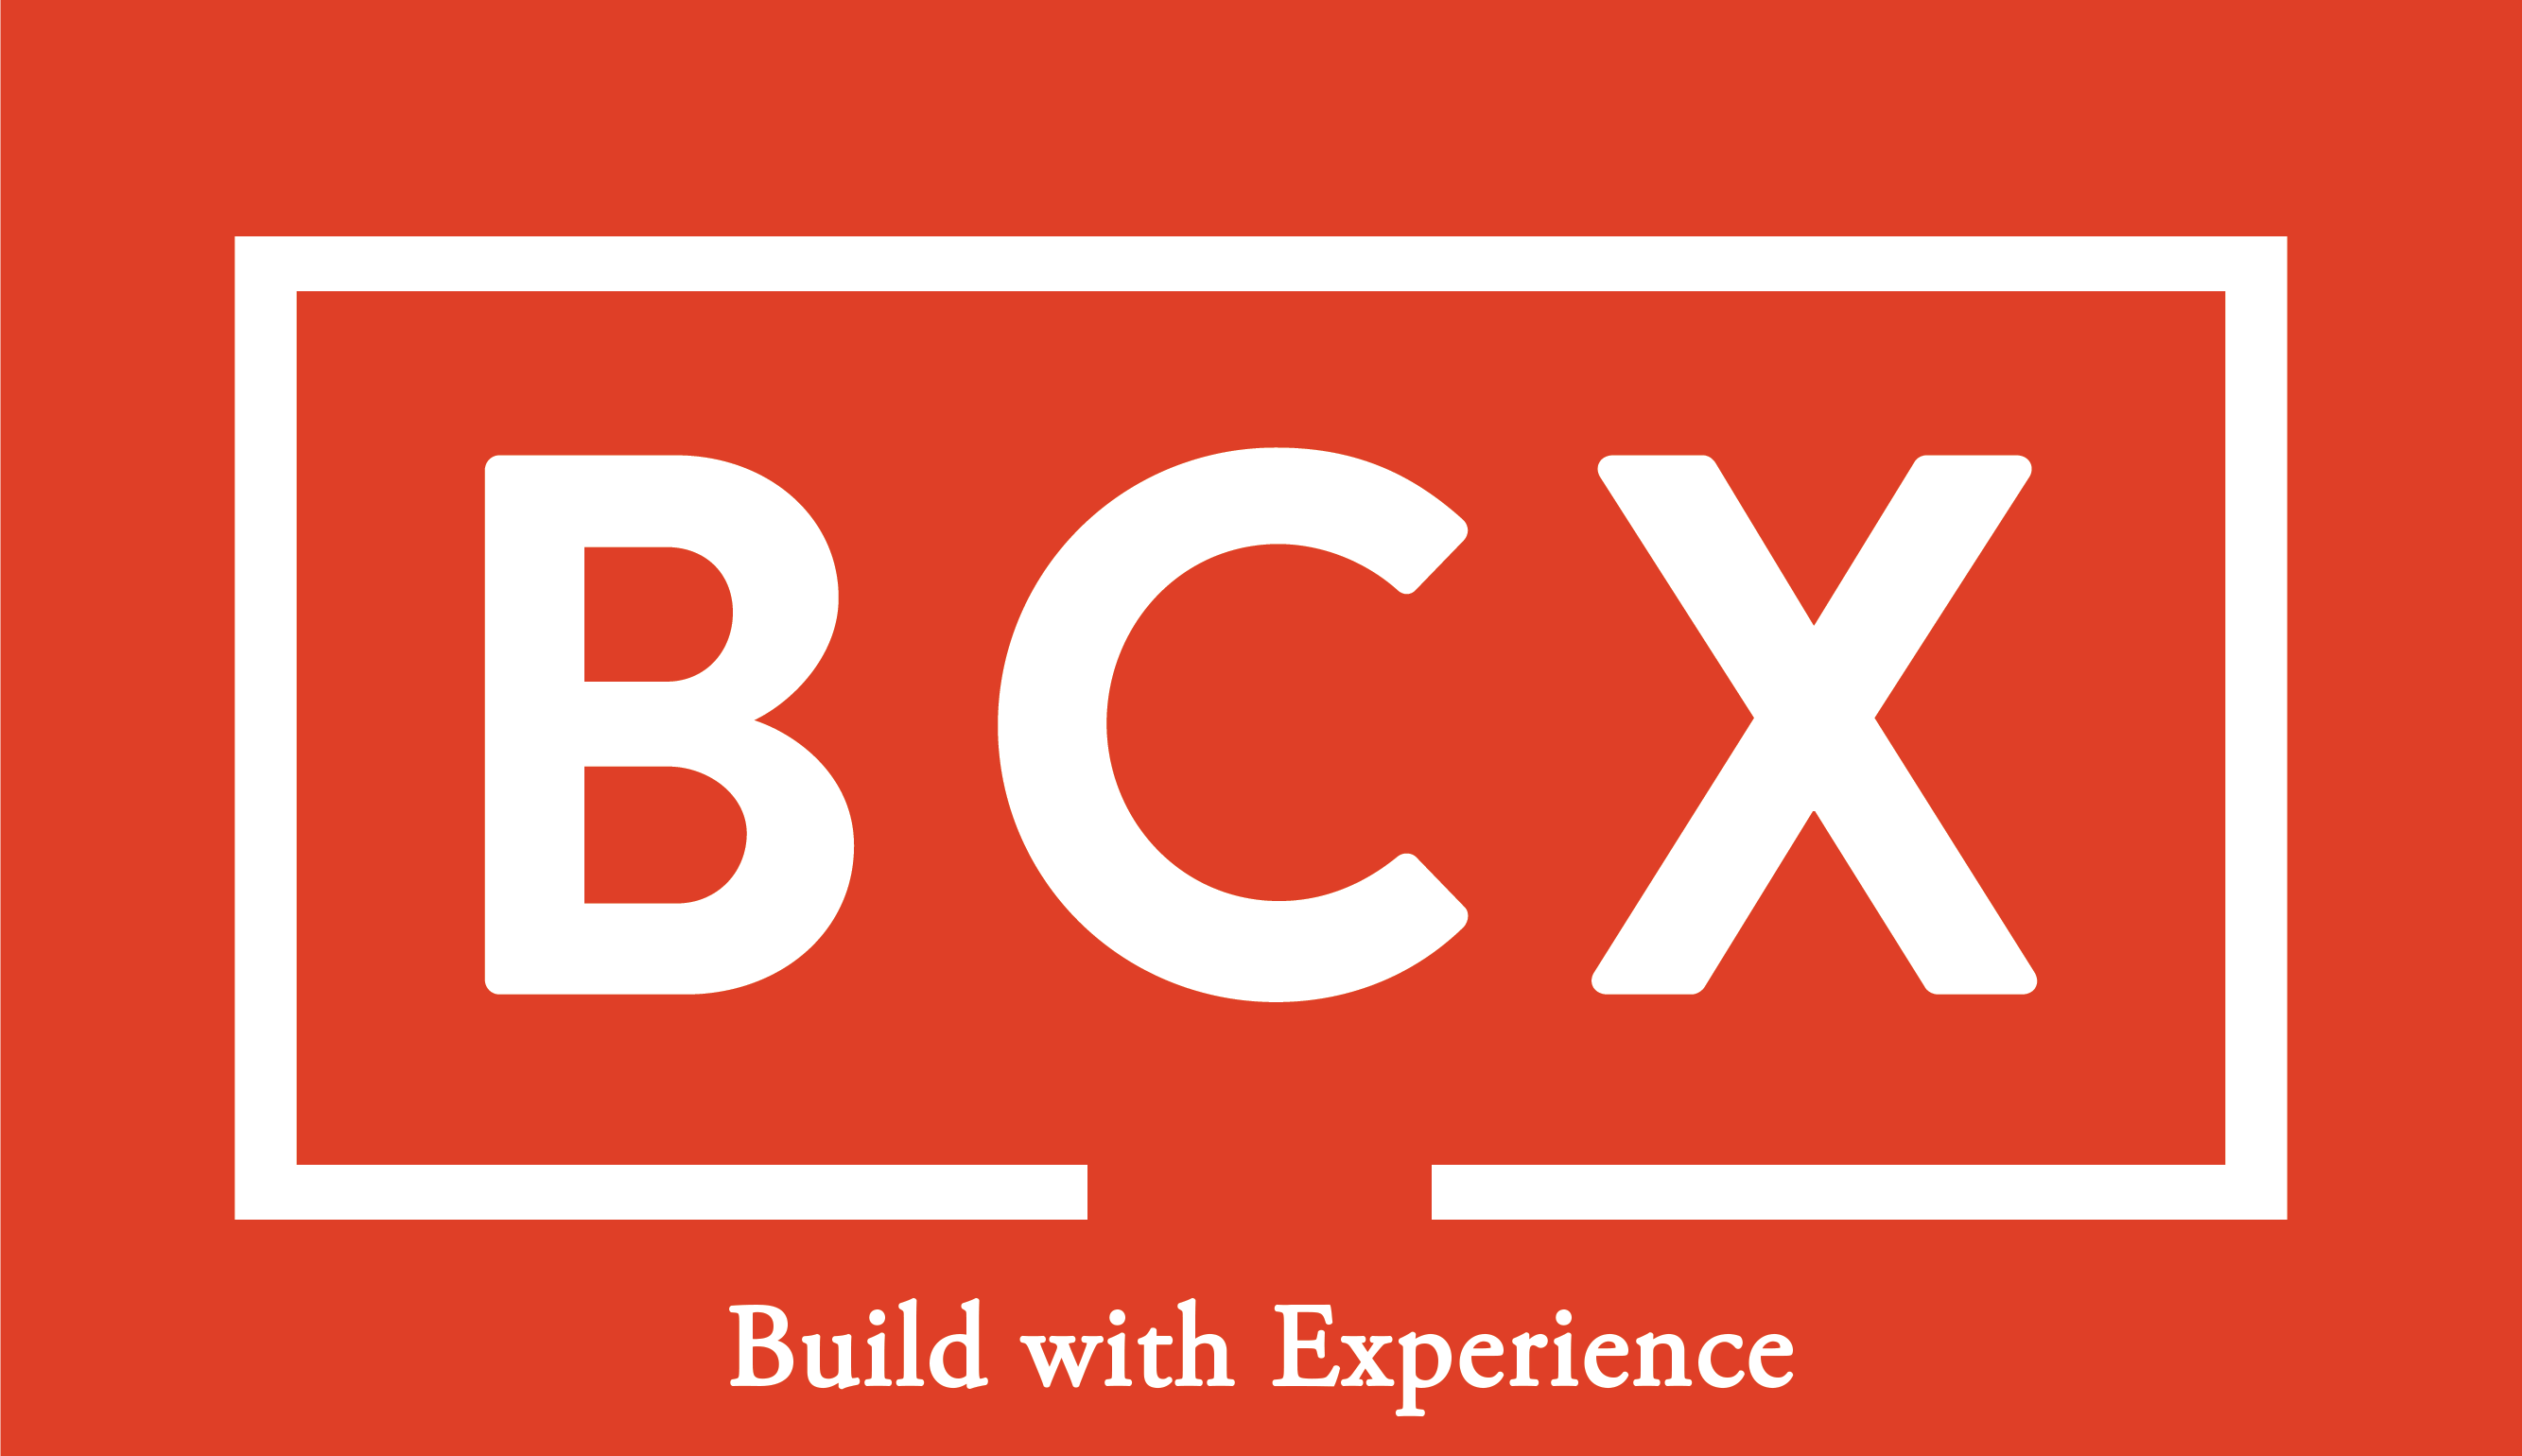 bcx logo